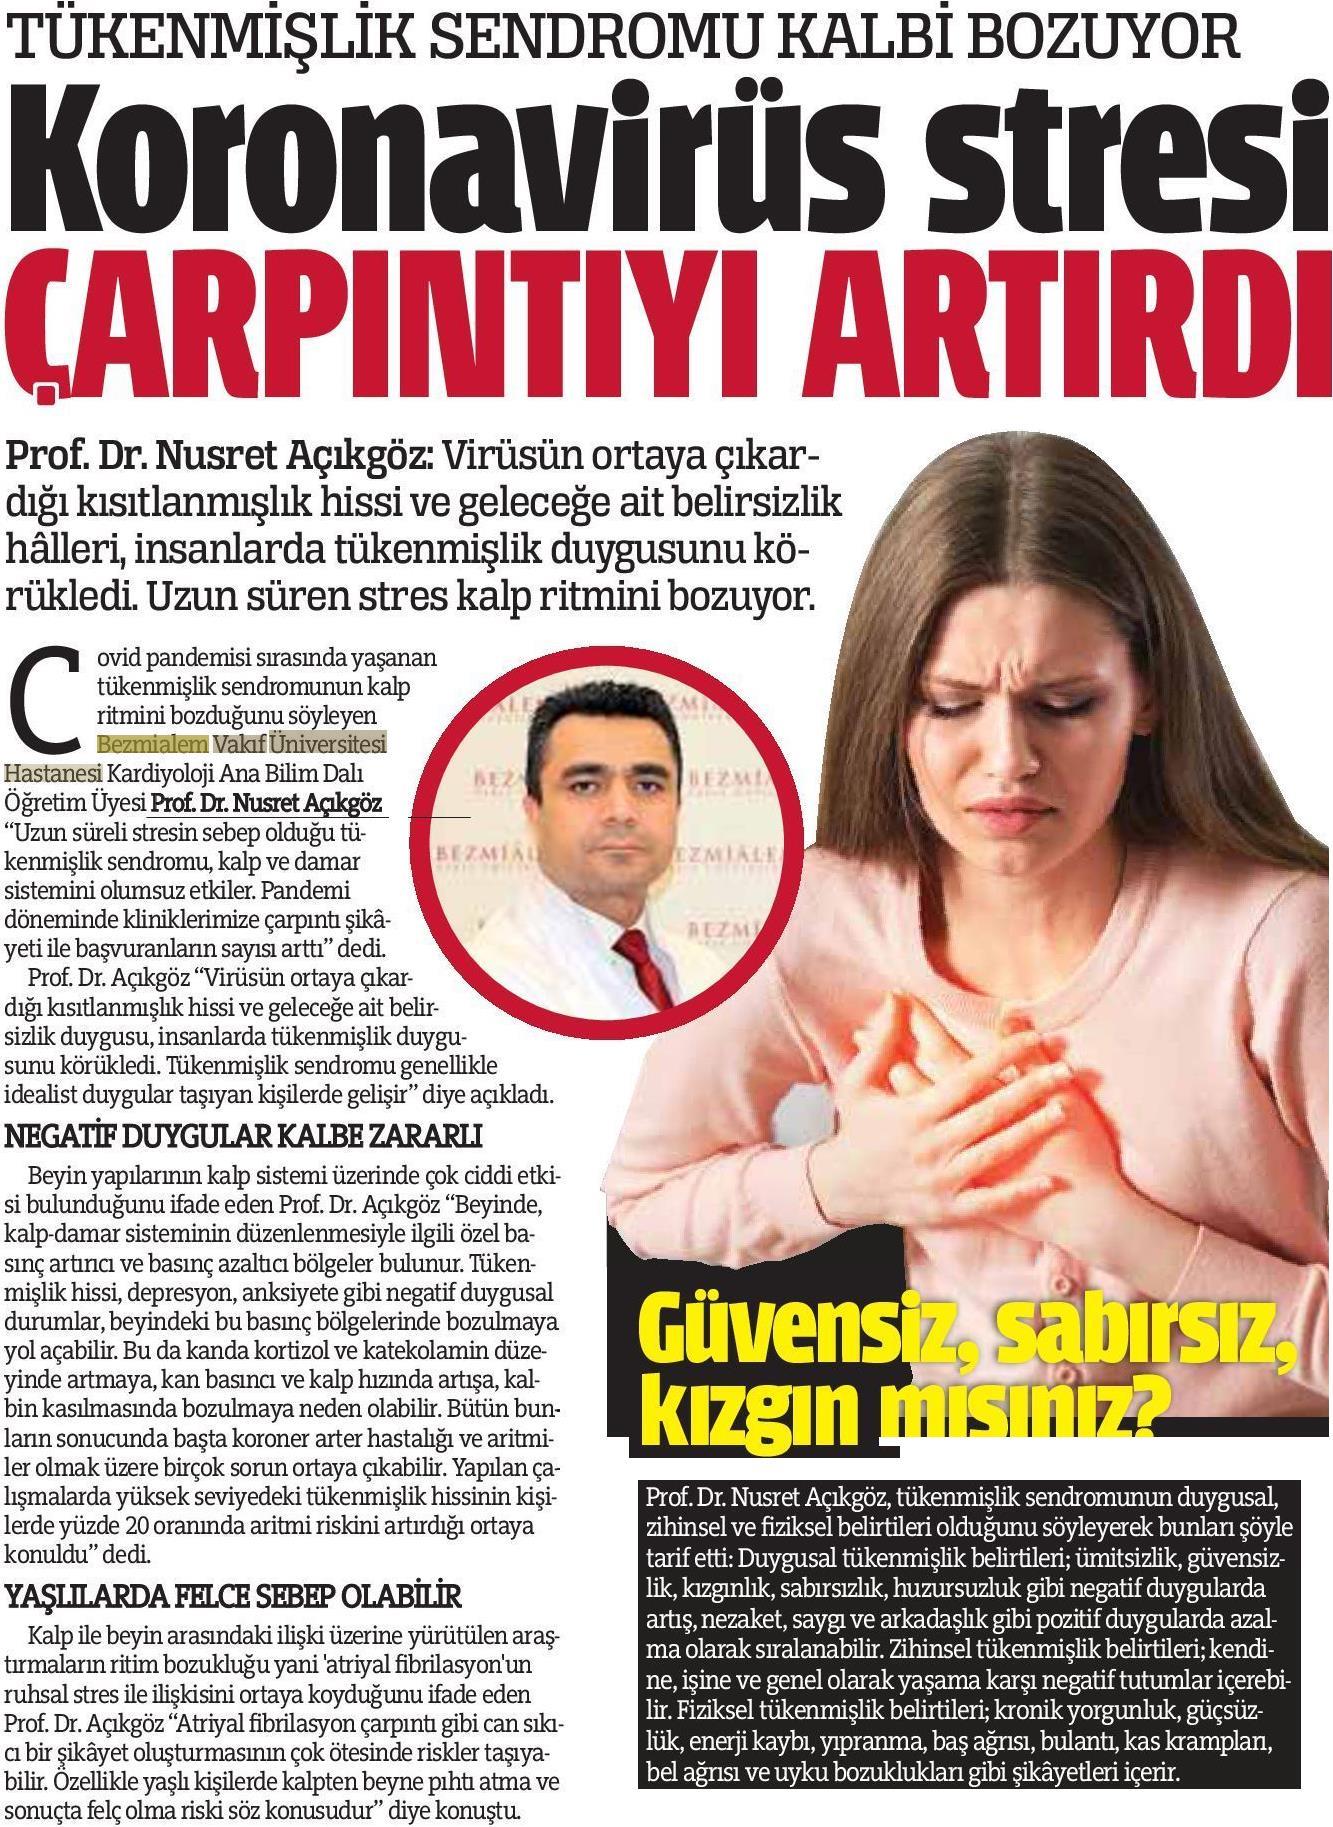 Turkiye Gazetesi_Kardiyoloji_030920.jpg